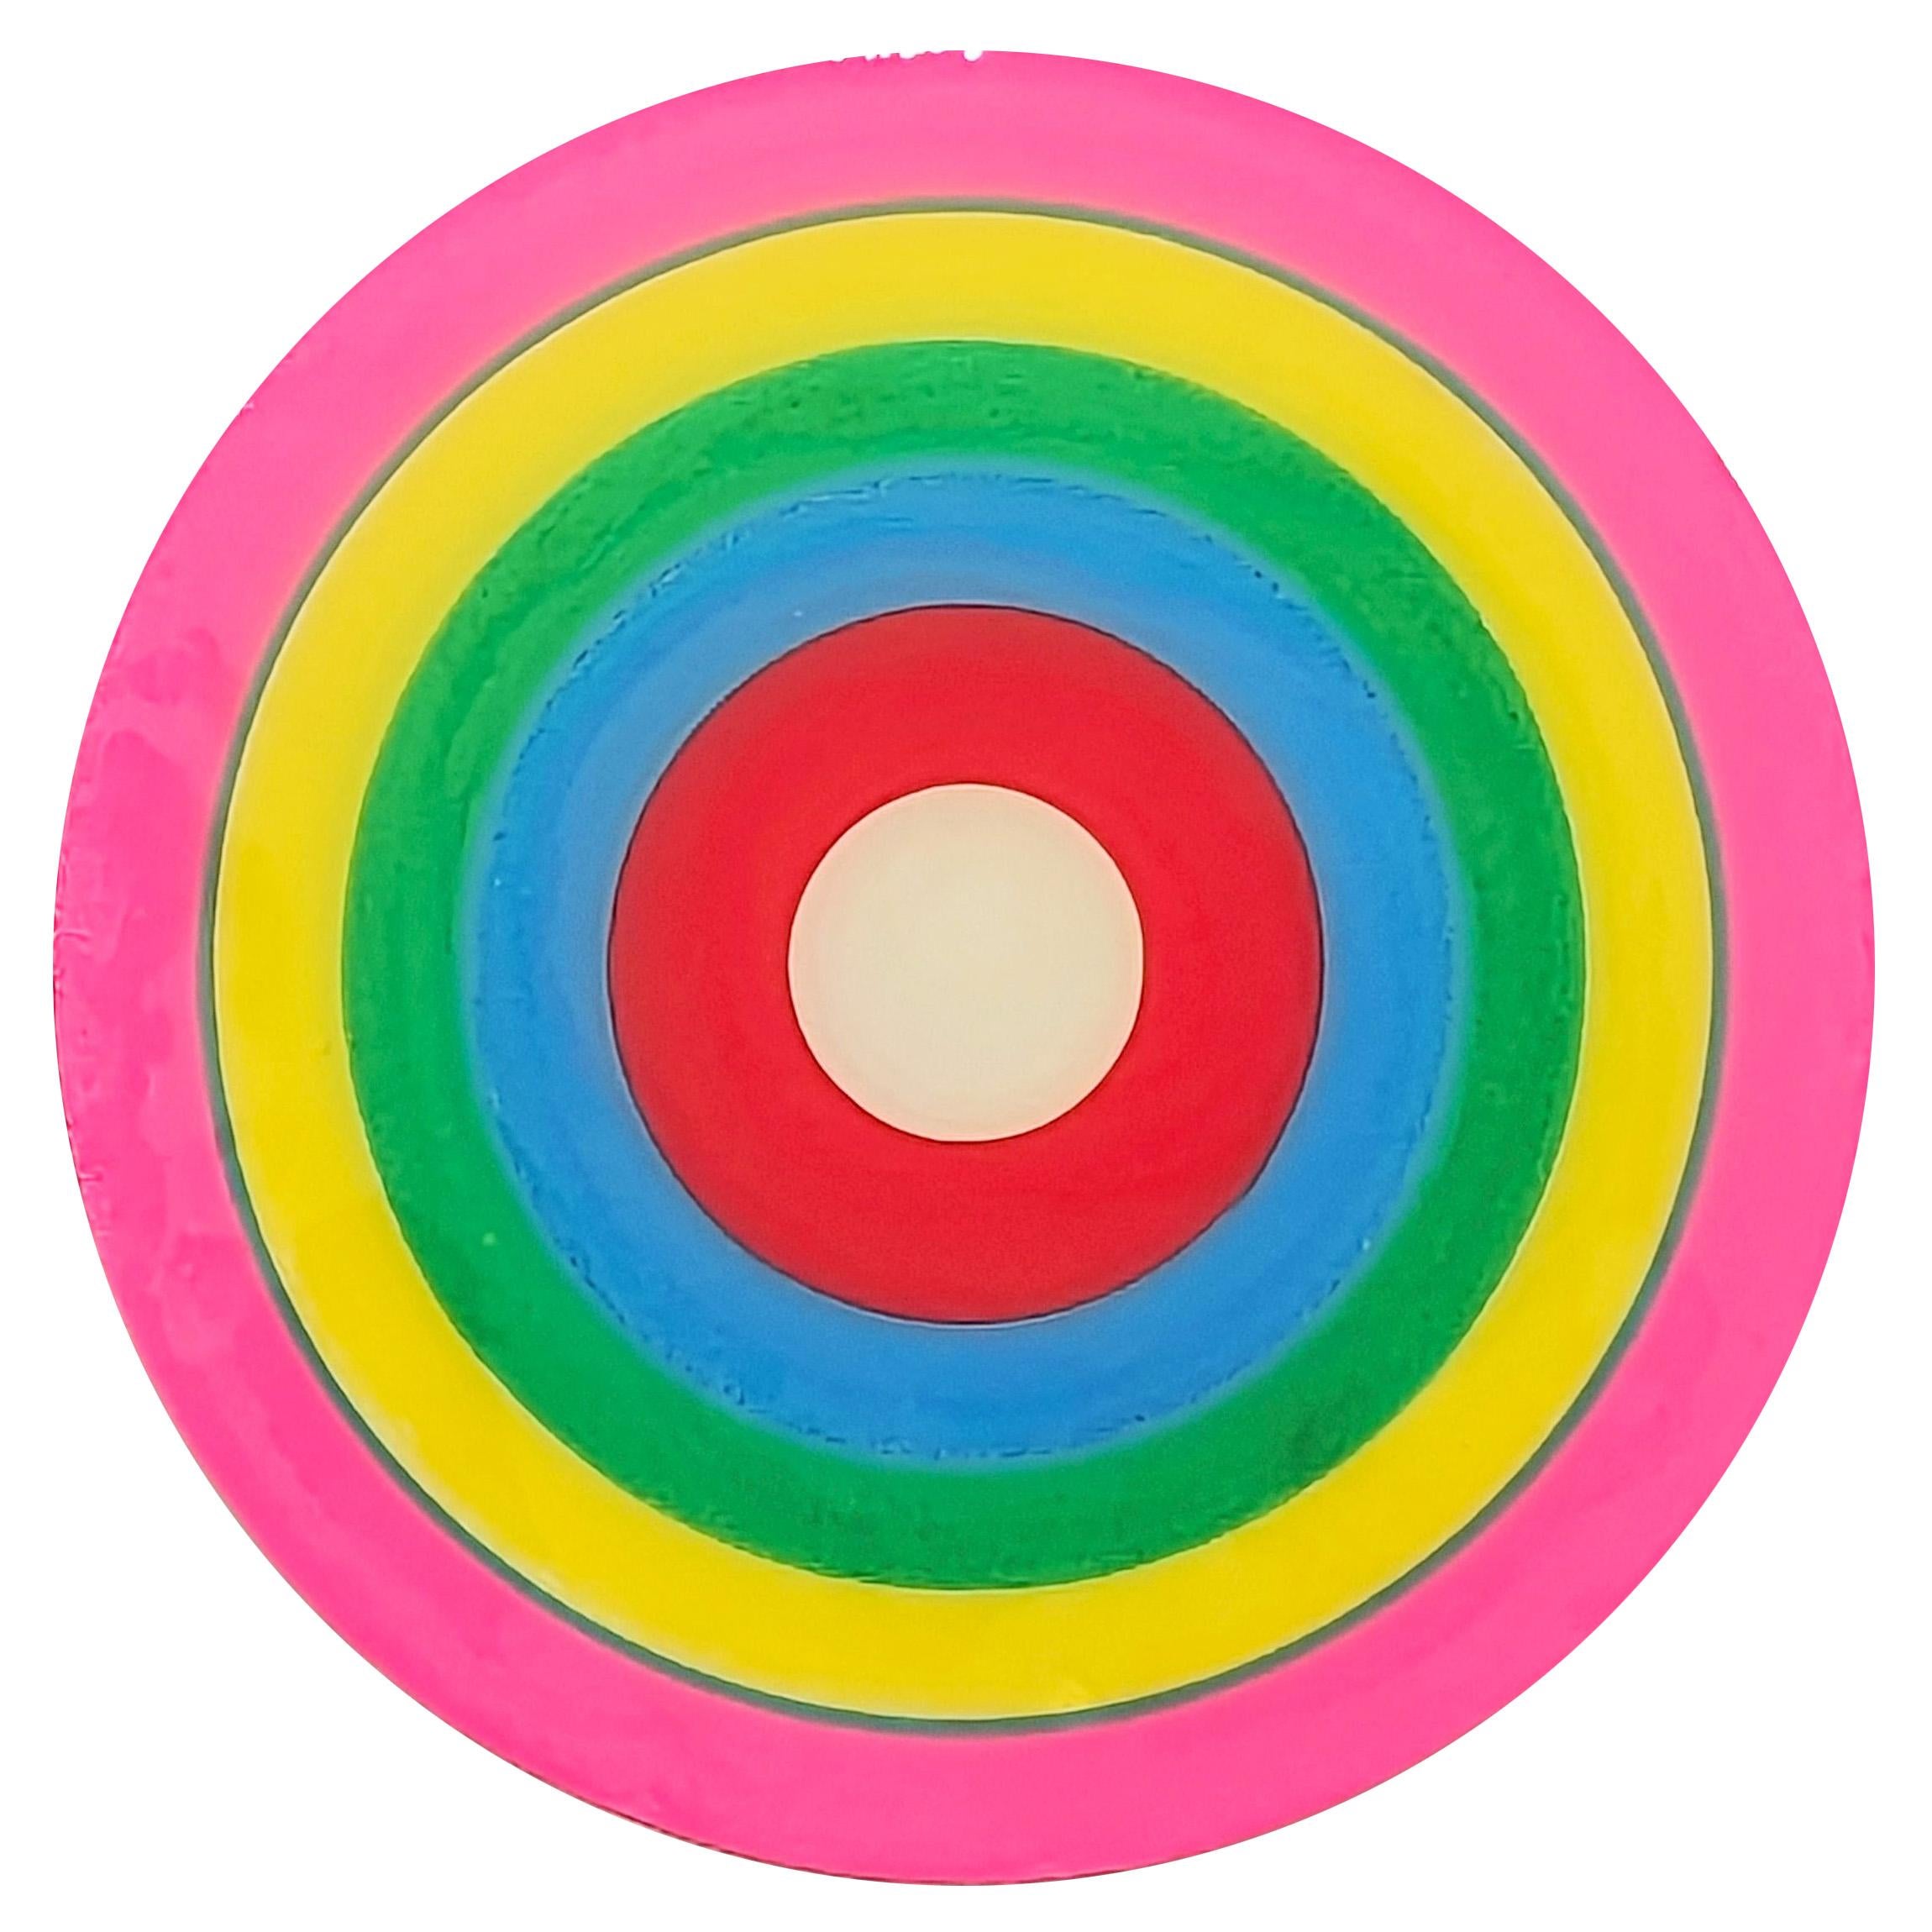 "Study for a Song 8" Peinture contemporaine abstraite colorée en forme de cercle concentrique